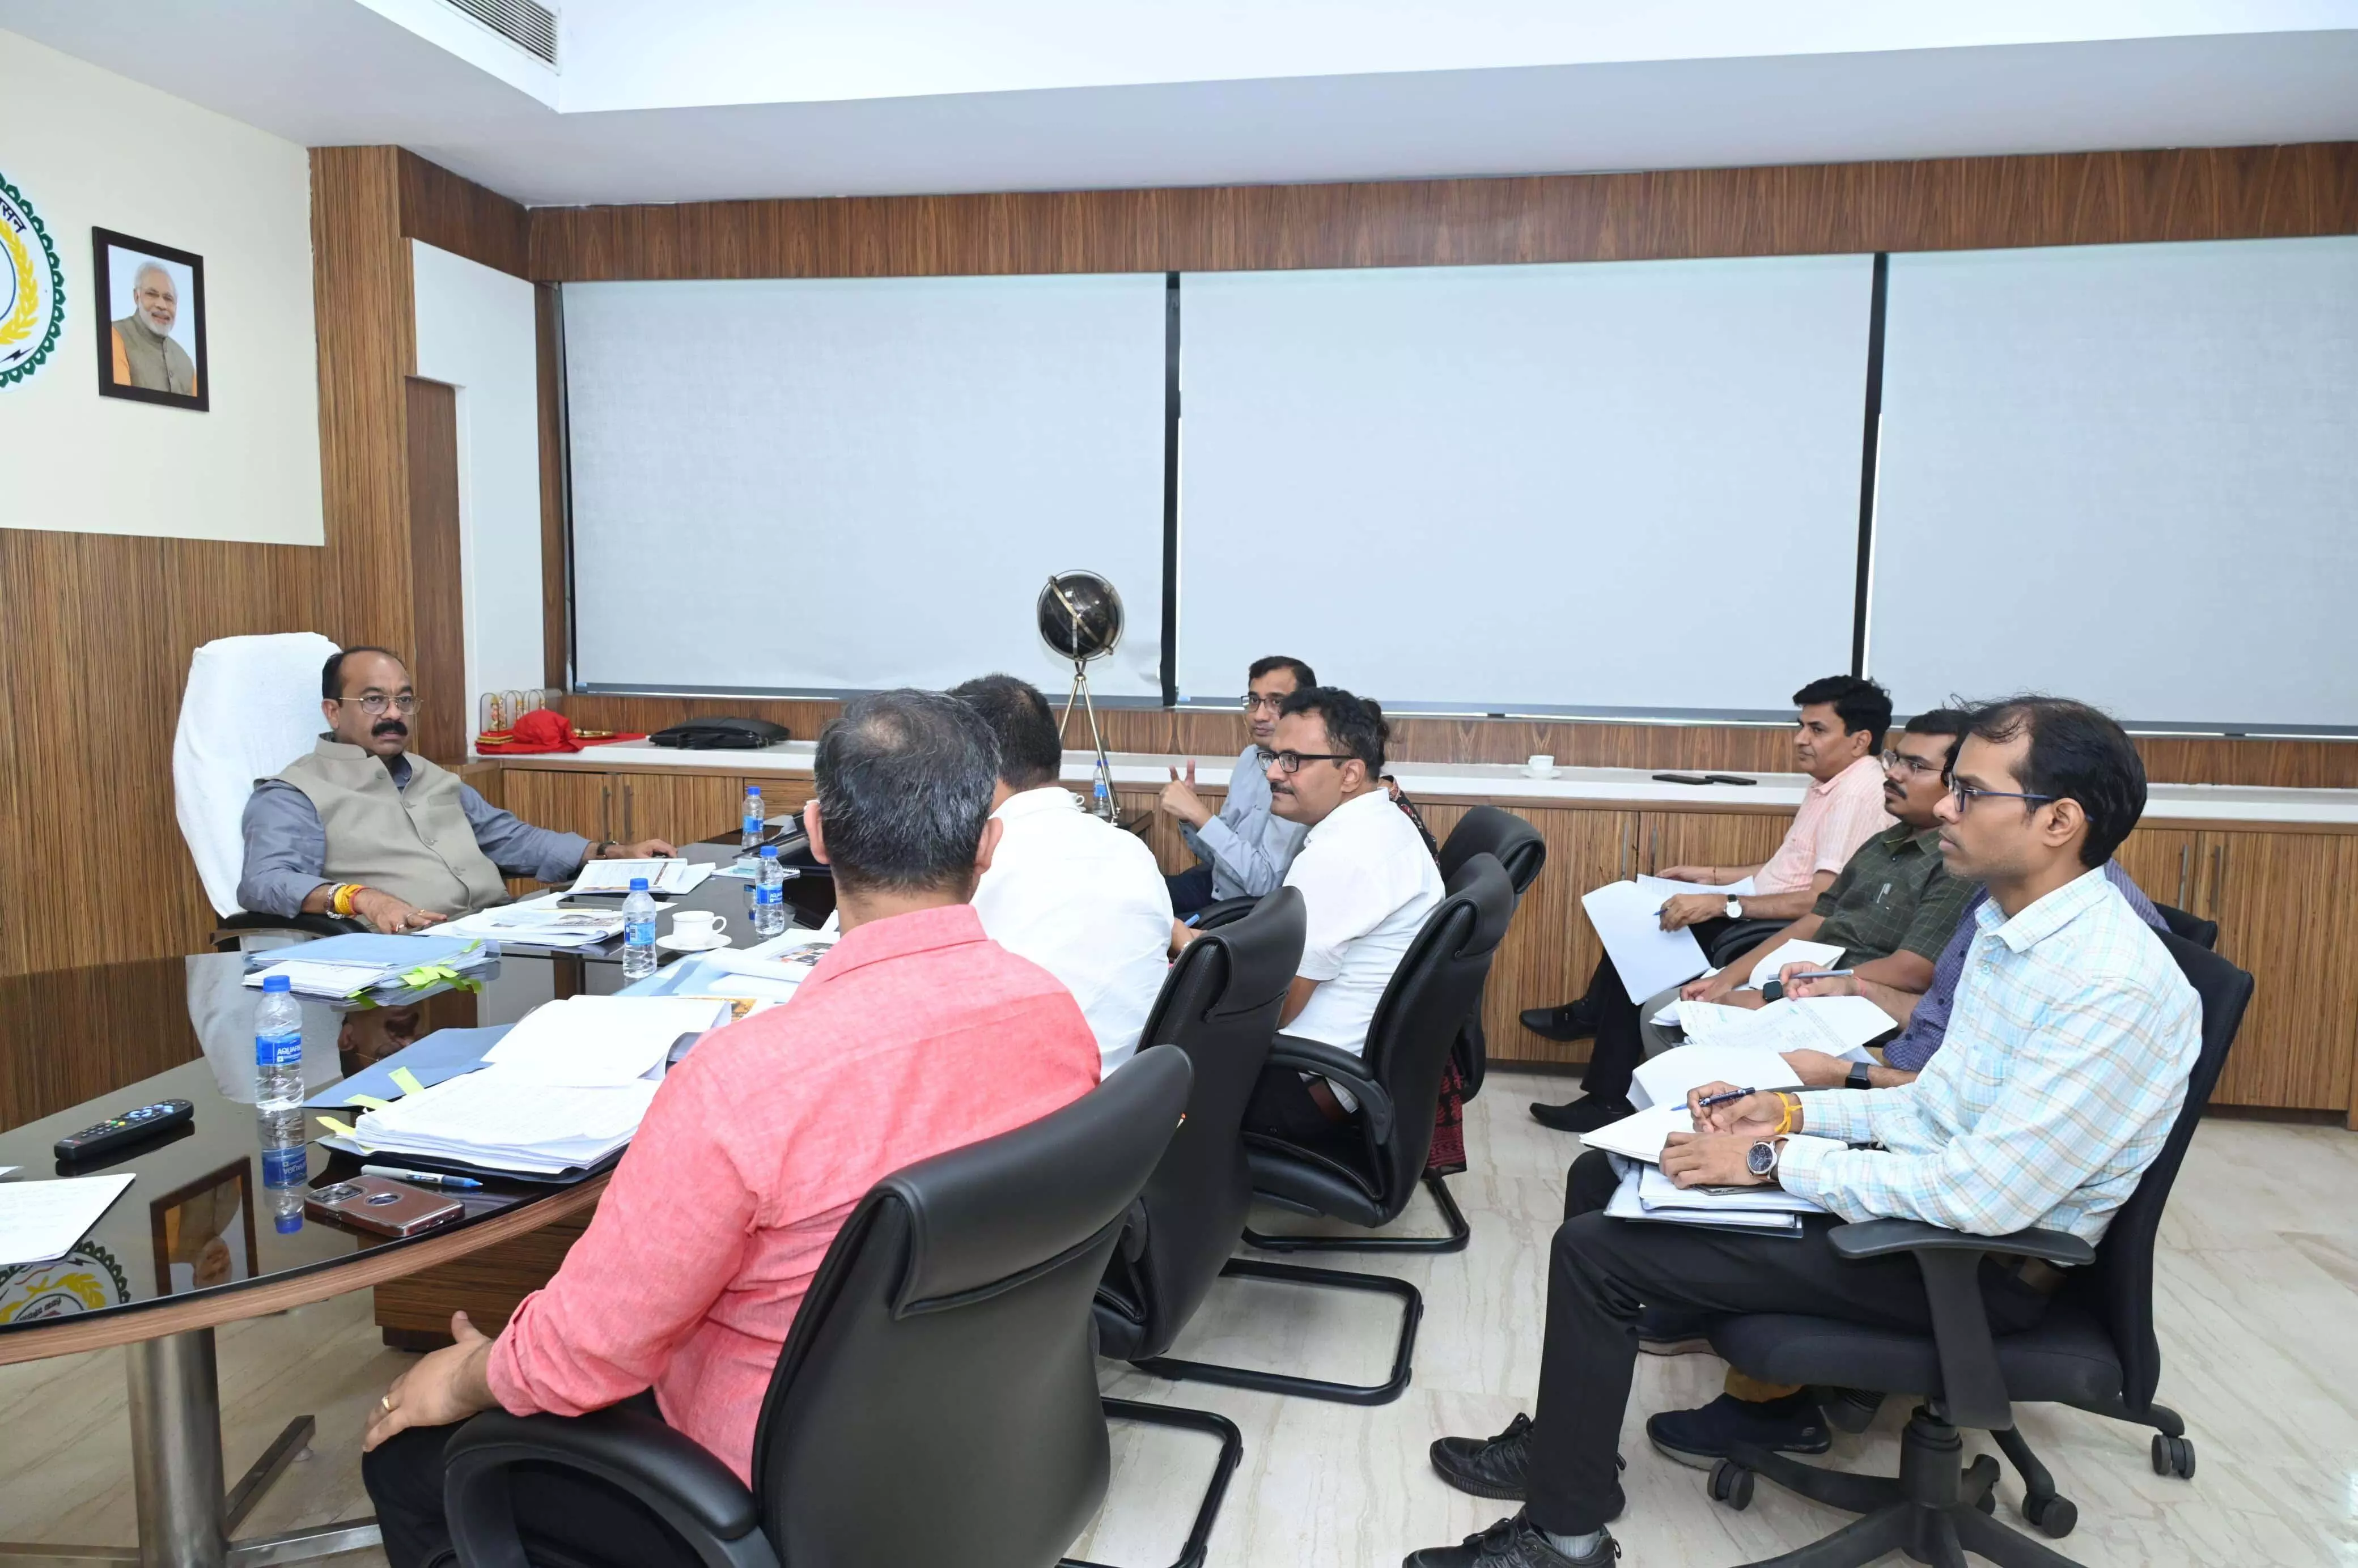 Deputy Chief Minister अरुण साव ने की नगरीय प्रशासन विभाग के कार्यों की समीक्षा